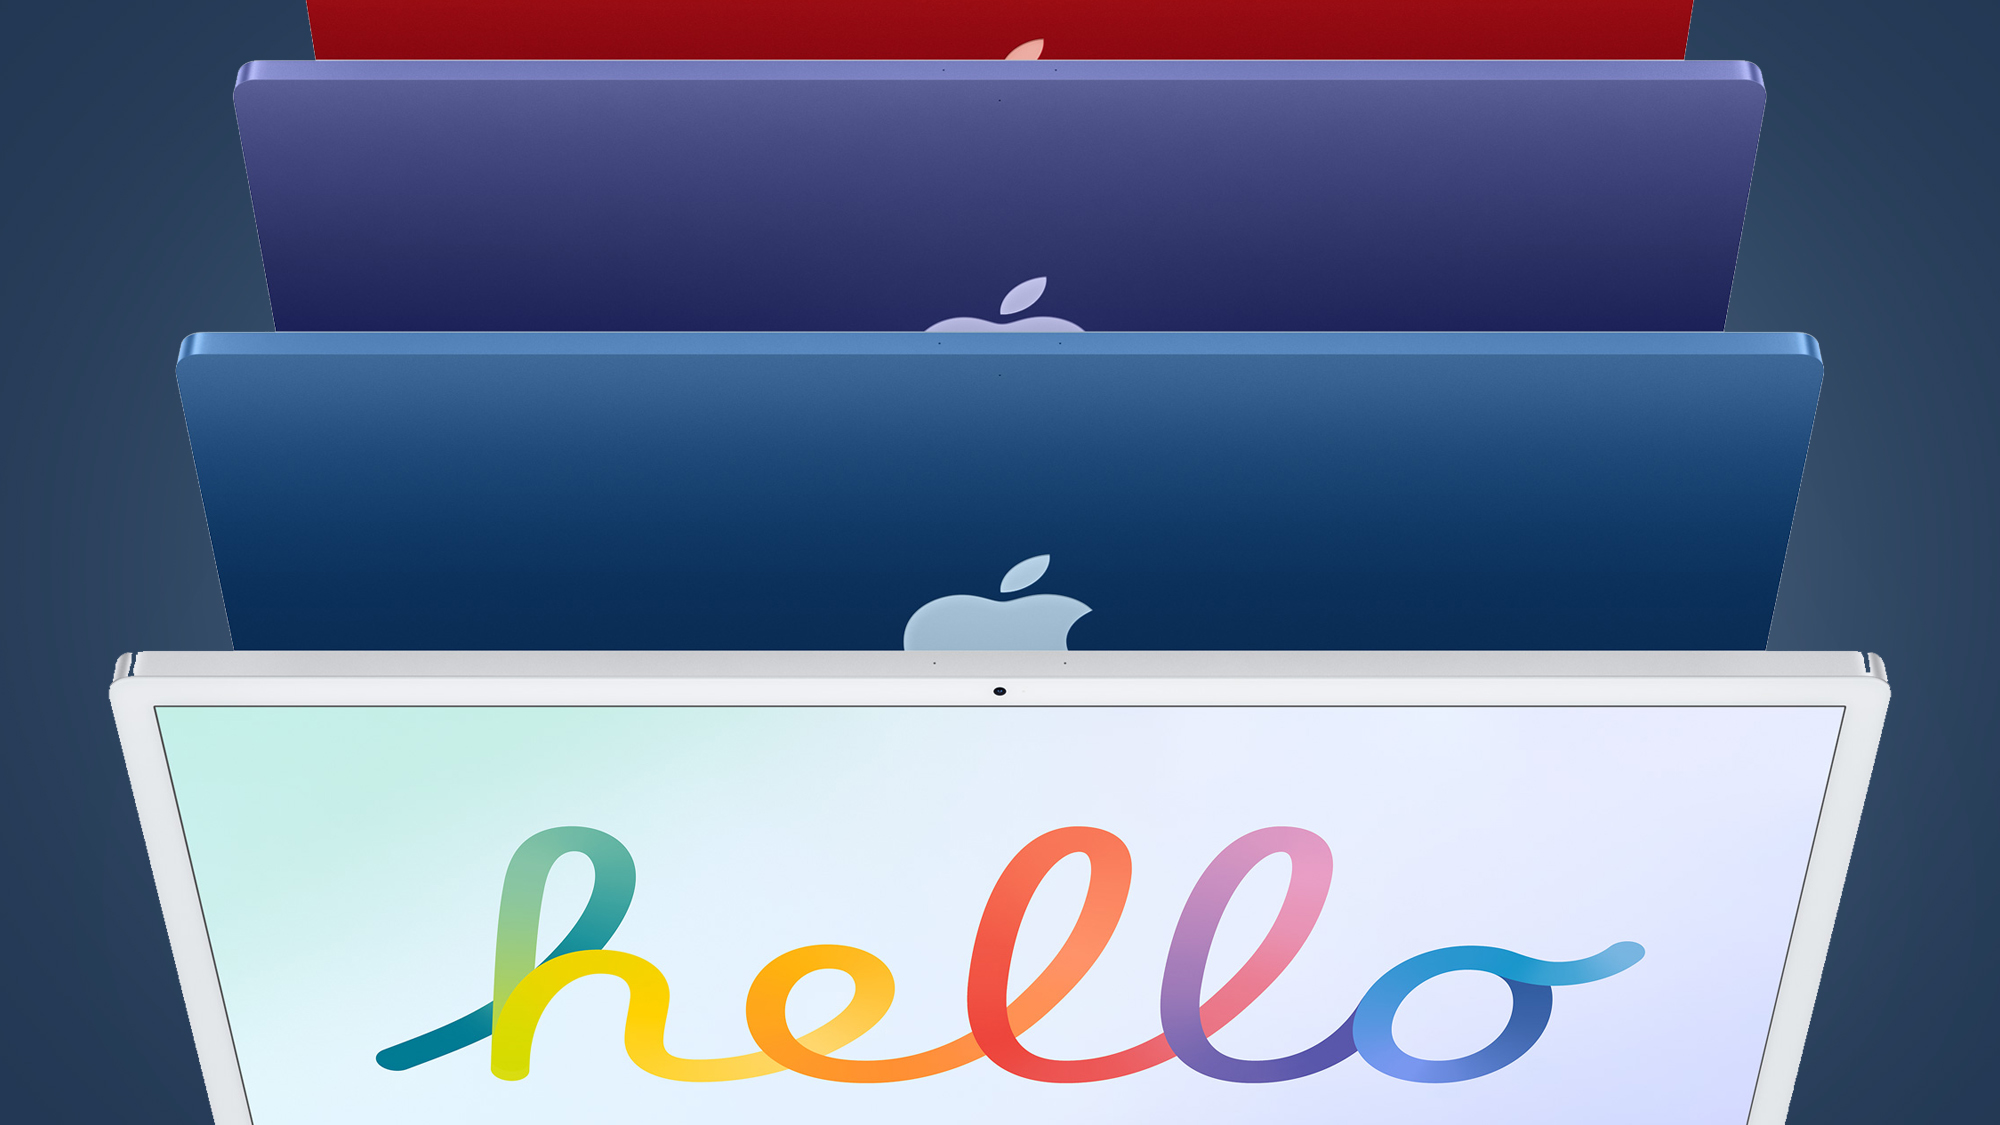 Несколько цветов Apple iMac спиной к спине на синем фоне